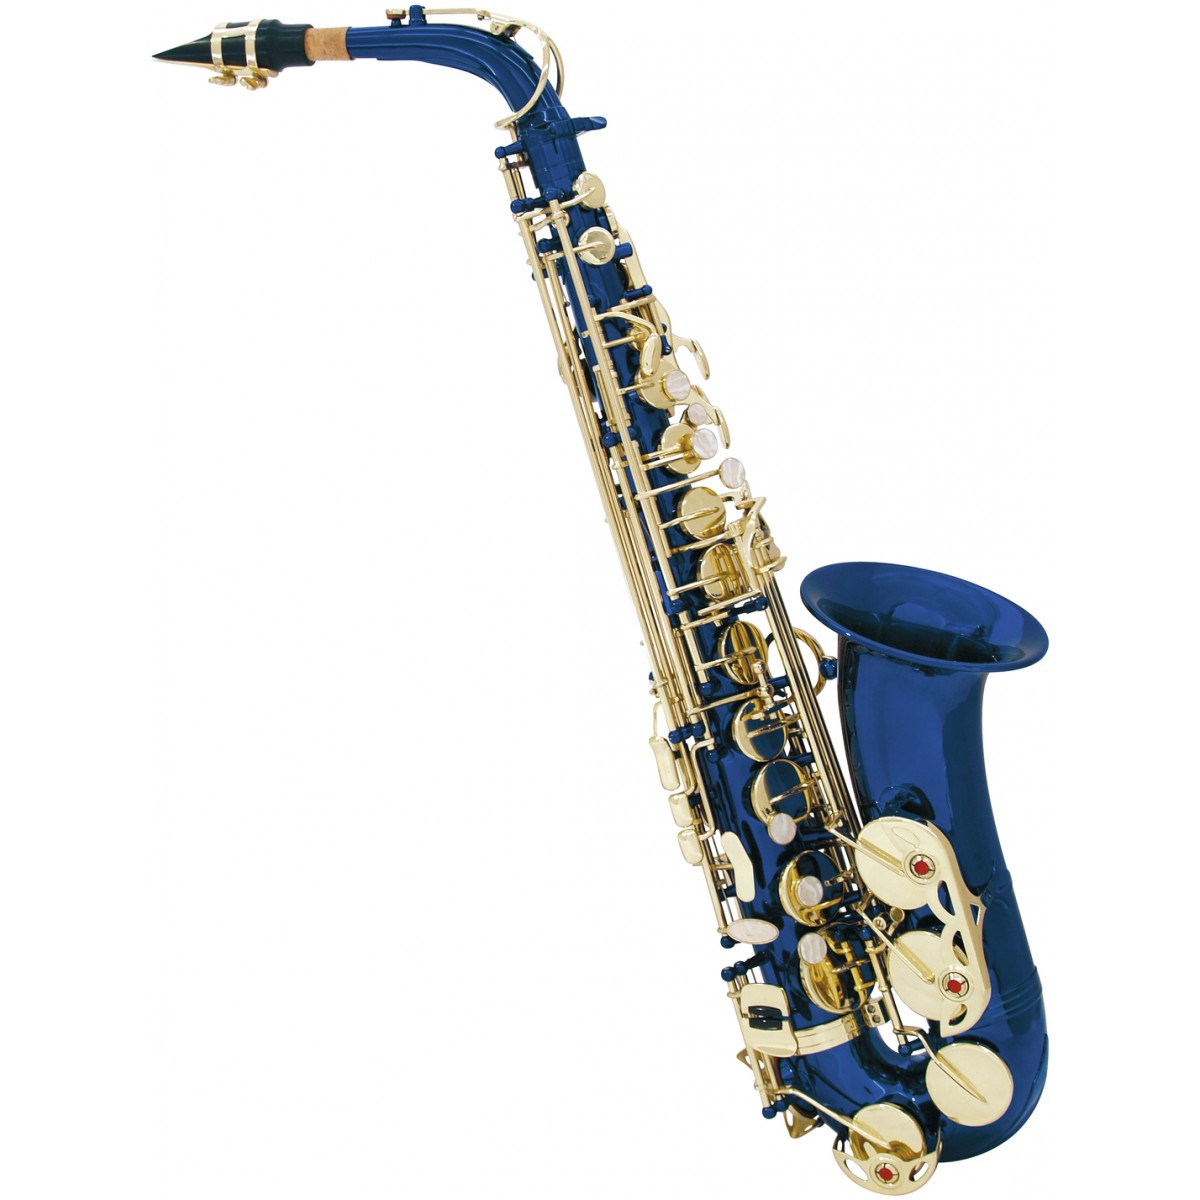 Fotografie Dimavery SP-30 Es alt saxofon, modrý